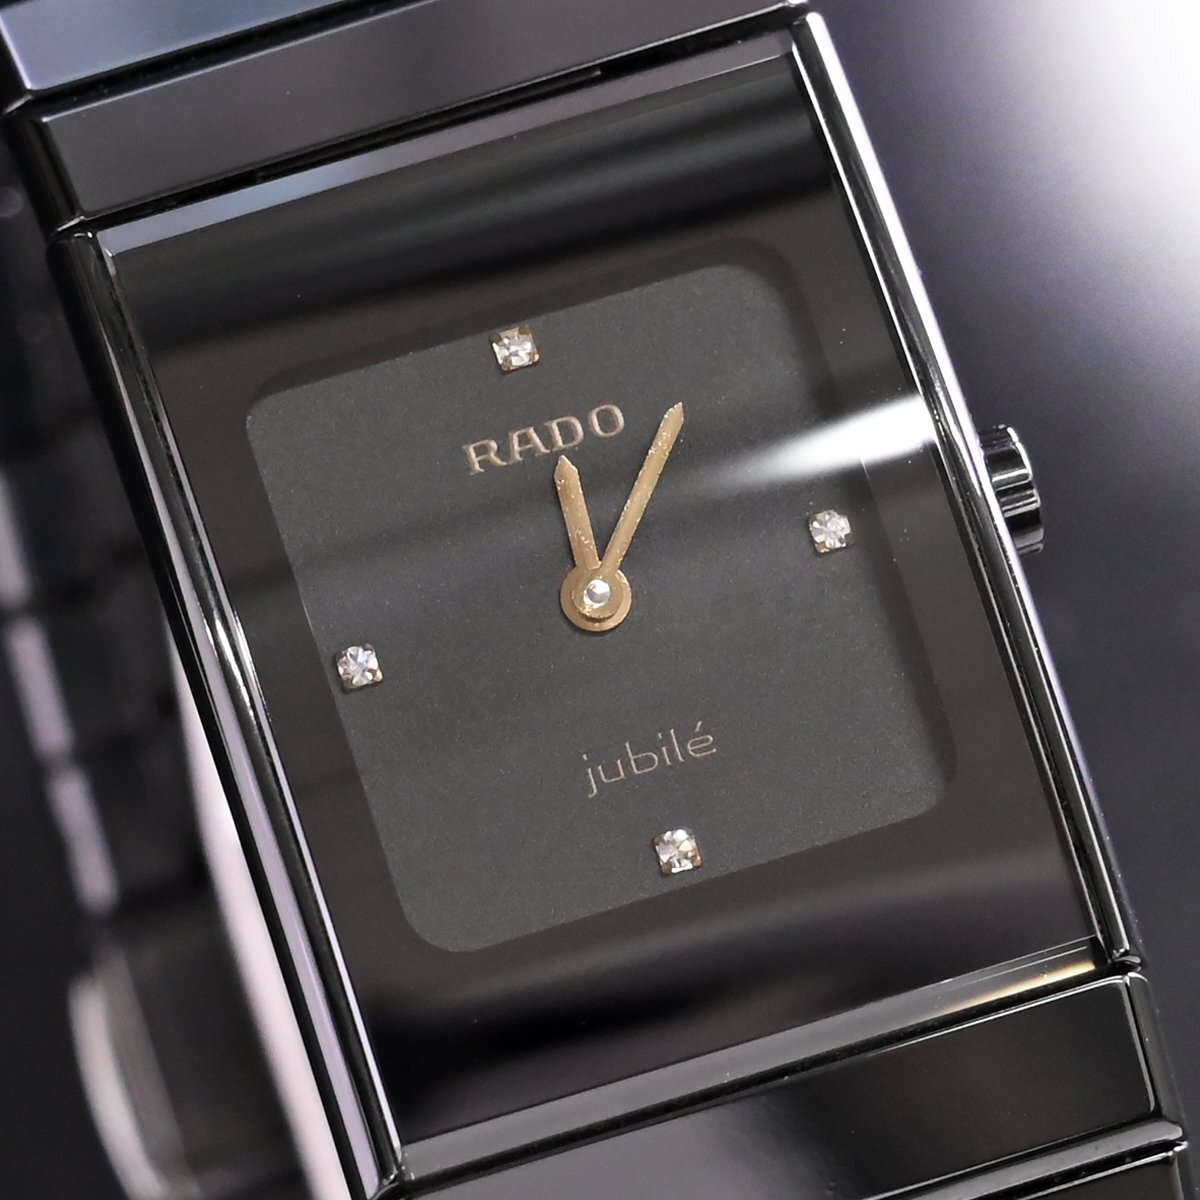  подлинный товар очень красивый товар Rado 4P diamond циферблат jubi Lee высокий tech керамика часы . орнамент наручные часы оригинальный браслет сохранение коробка с гарантией RADO